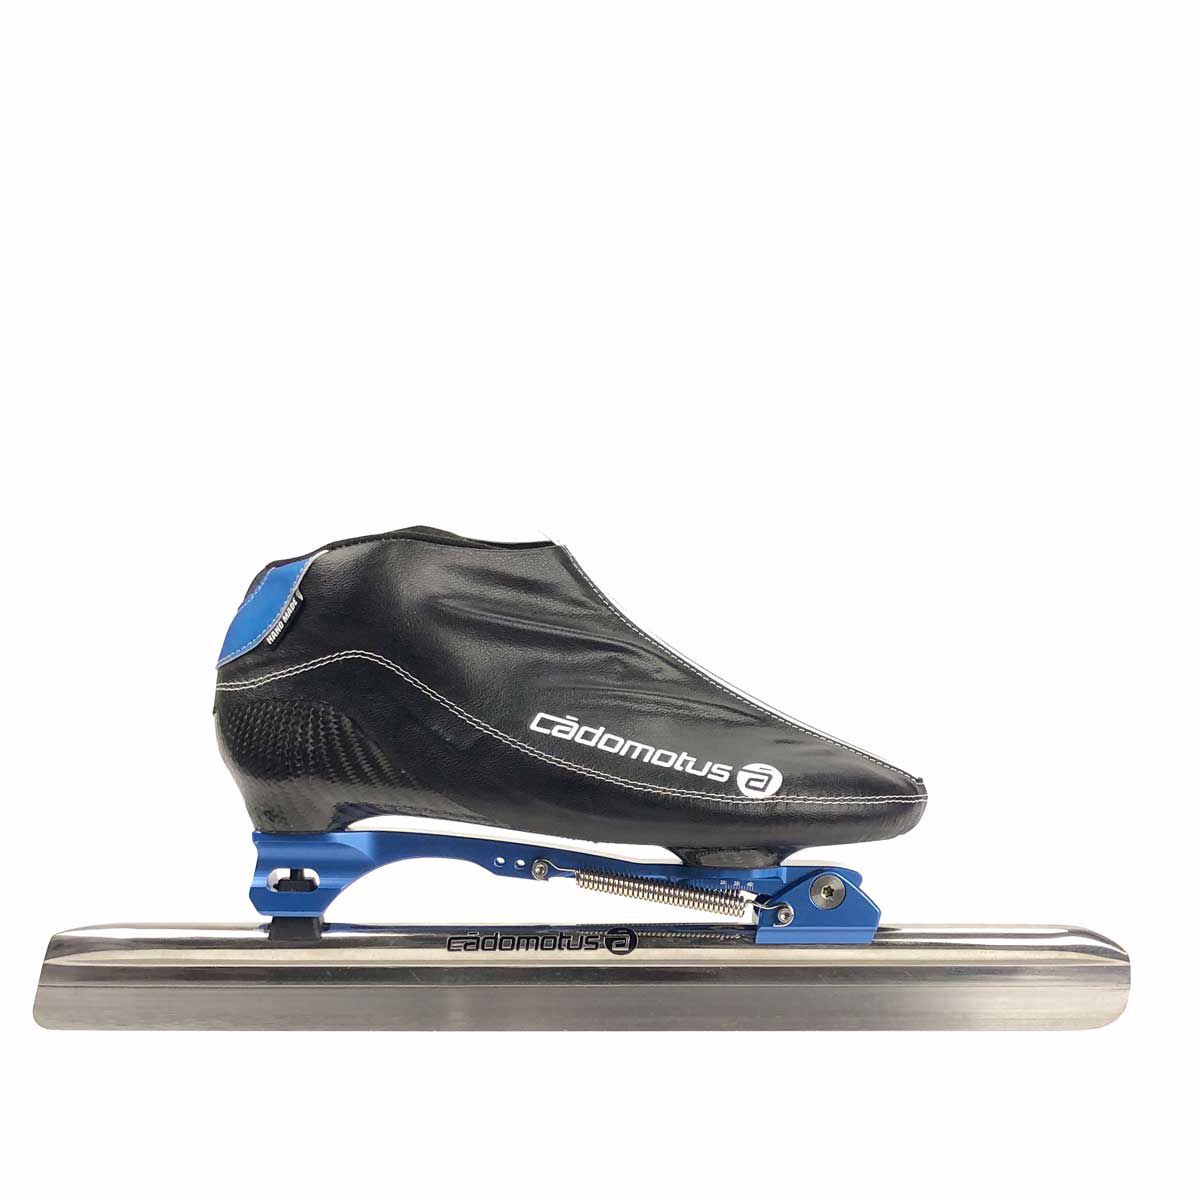 荷兰卡杜牧cadomotusnero克莱普整鞋专业短道速滑冰刀鞋速滑